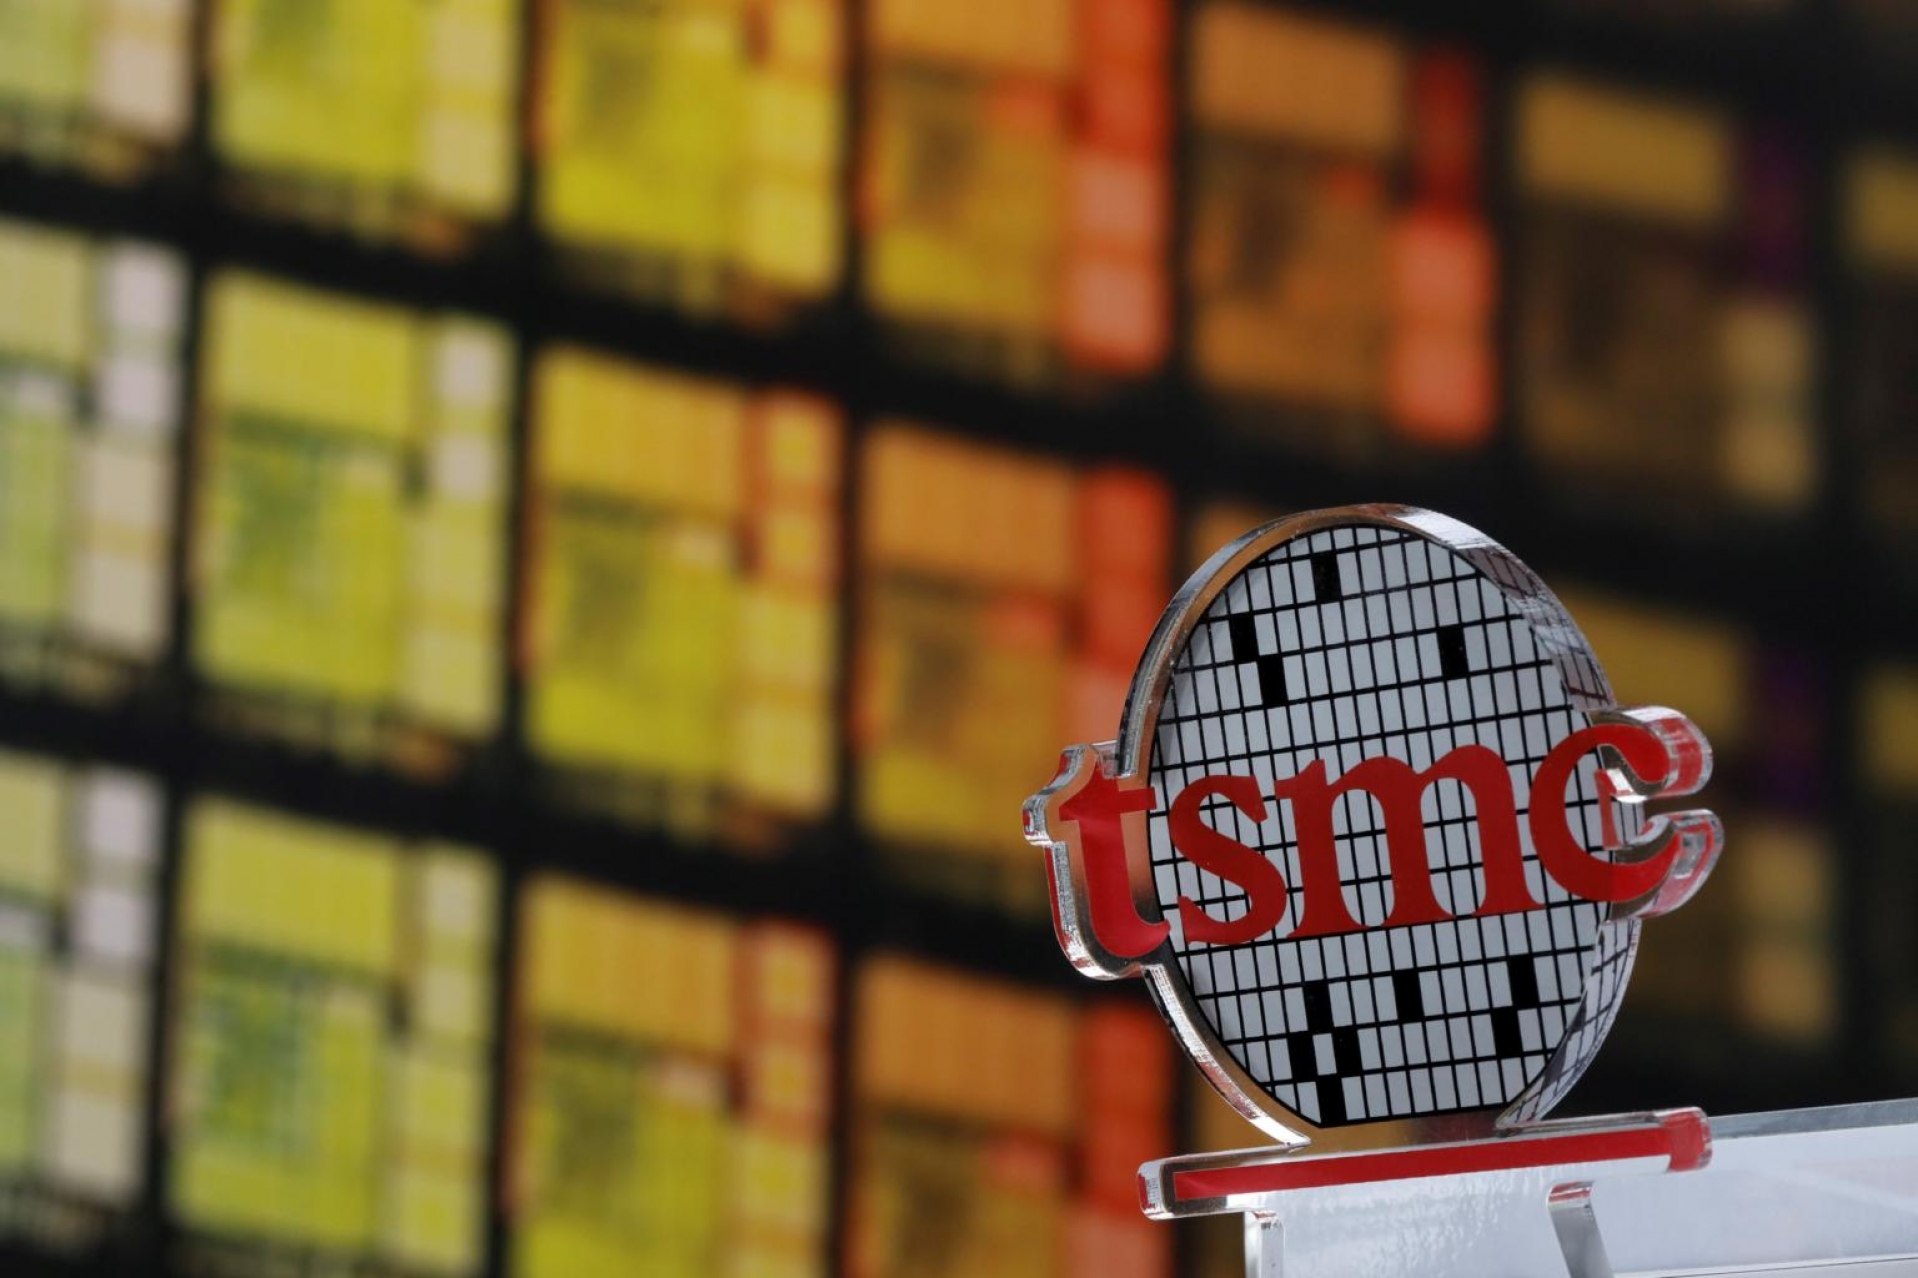 Sức ảnh hưởng của TSMC trong thị trường chip